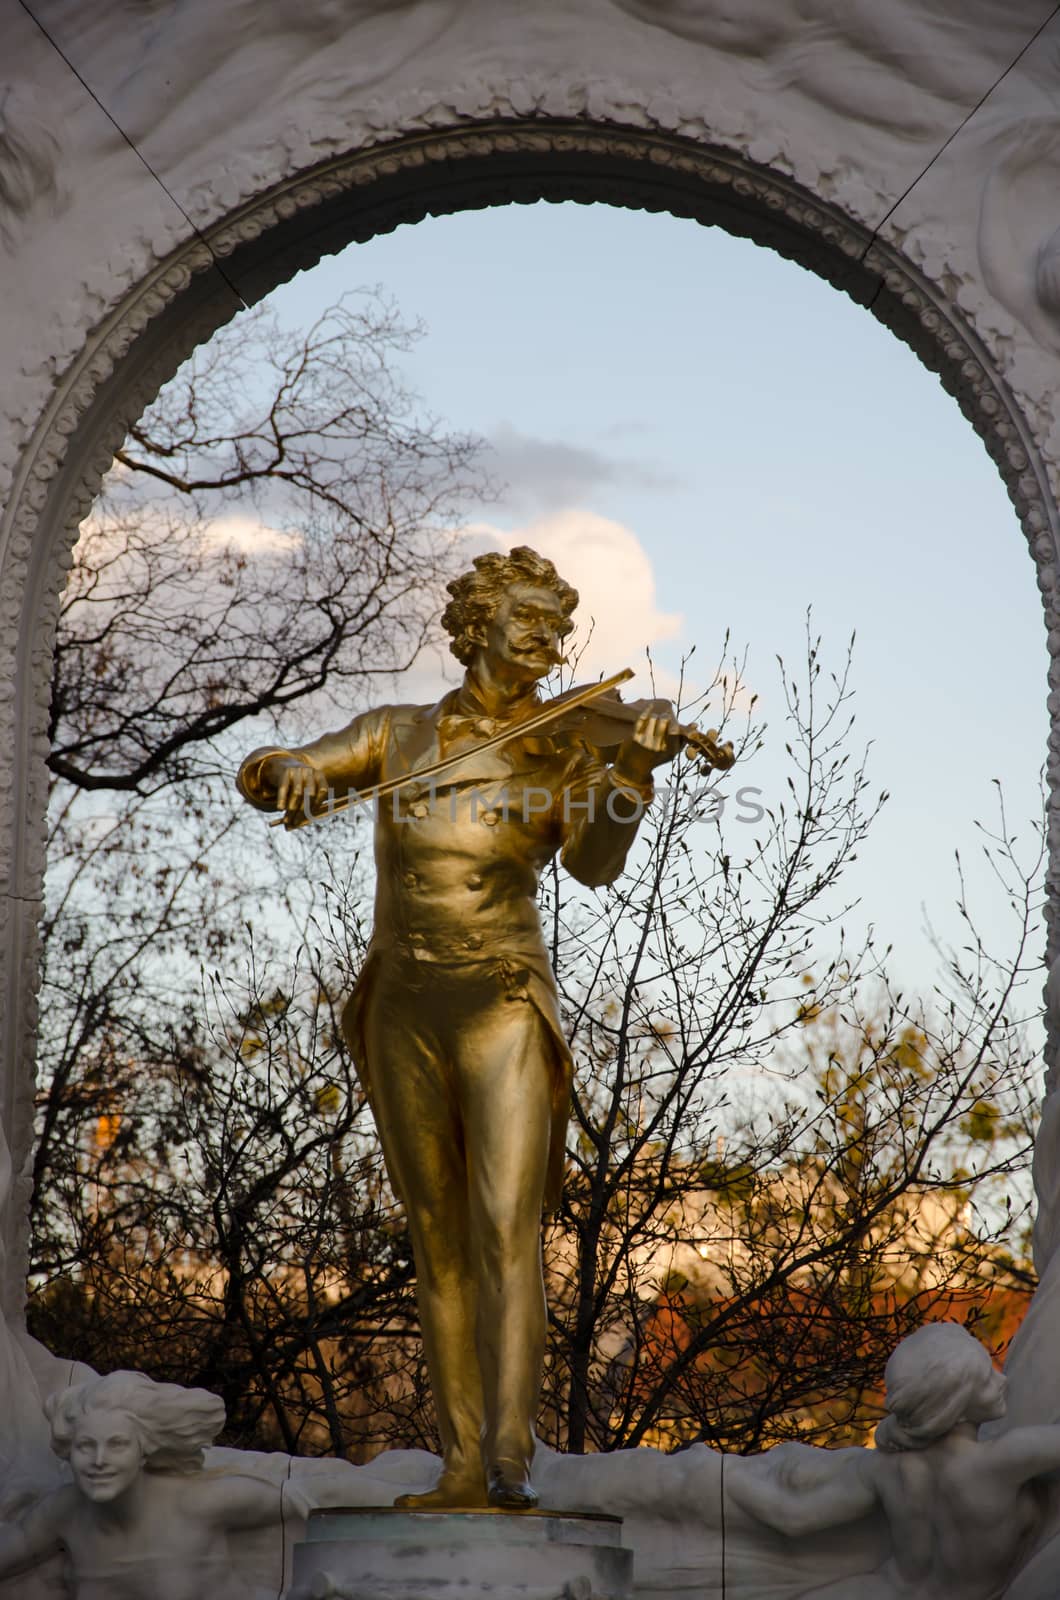 Johan Strauss statue in Vienna garden, Austria